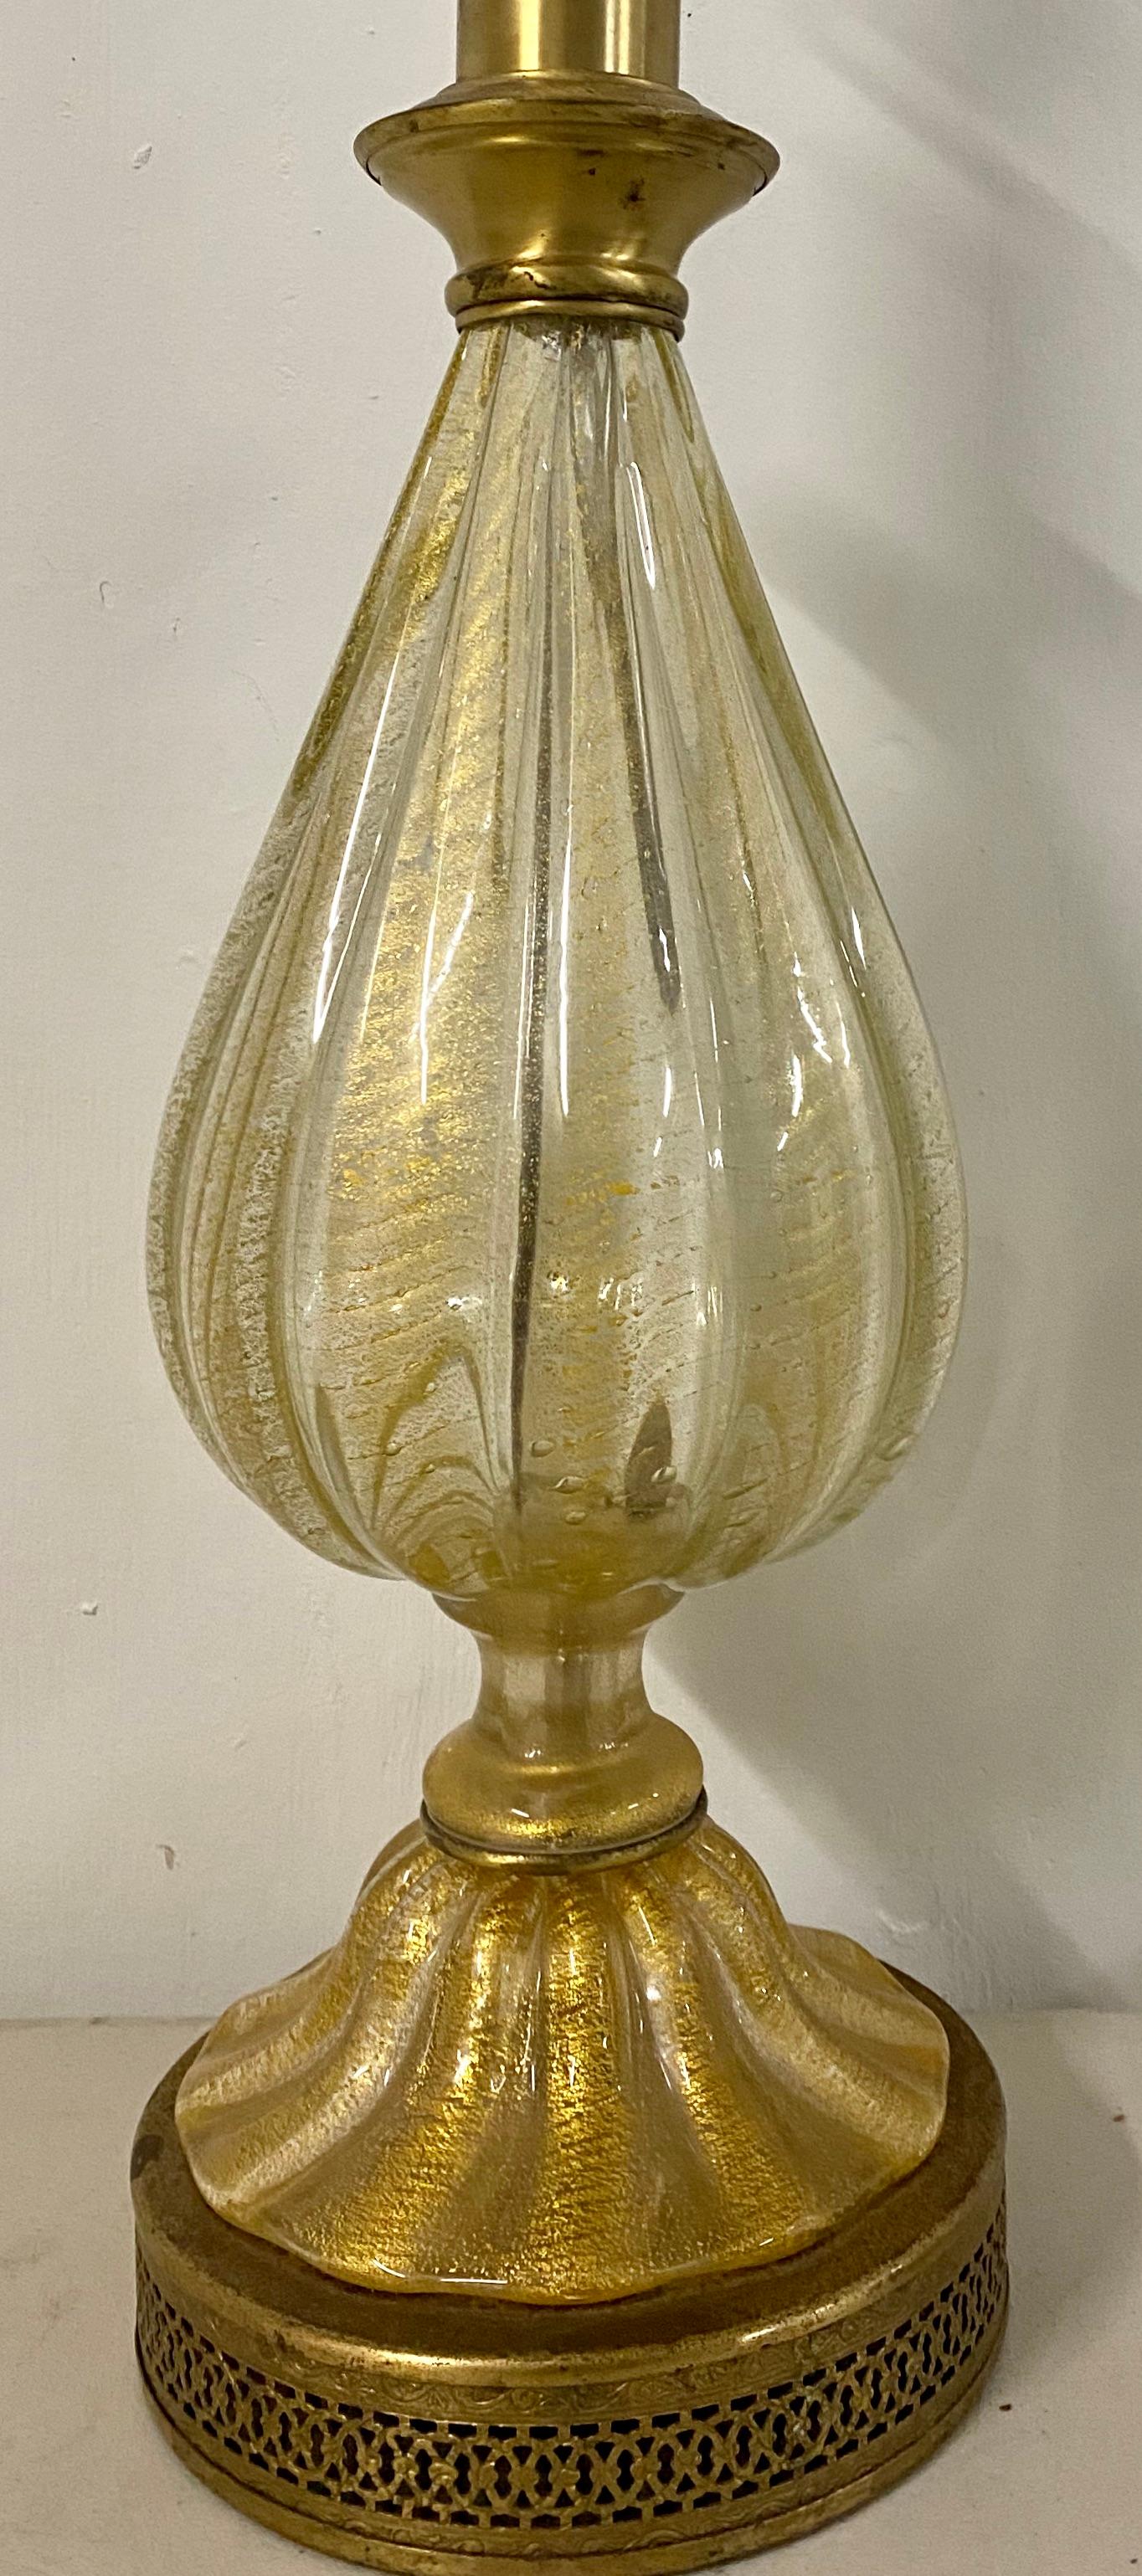 Lampe à poussière d'or soufflée à la main, moderne du milieu du siècle, vers 1950

Lampe soufflée à la main avec intérieur en poudre d'or sur une base en laiton

Mesures : 7.5